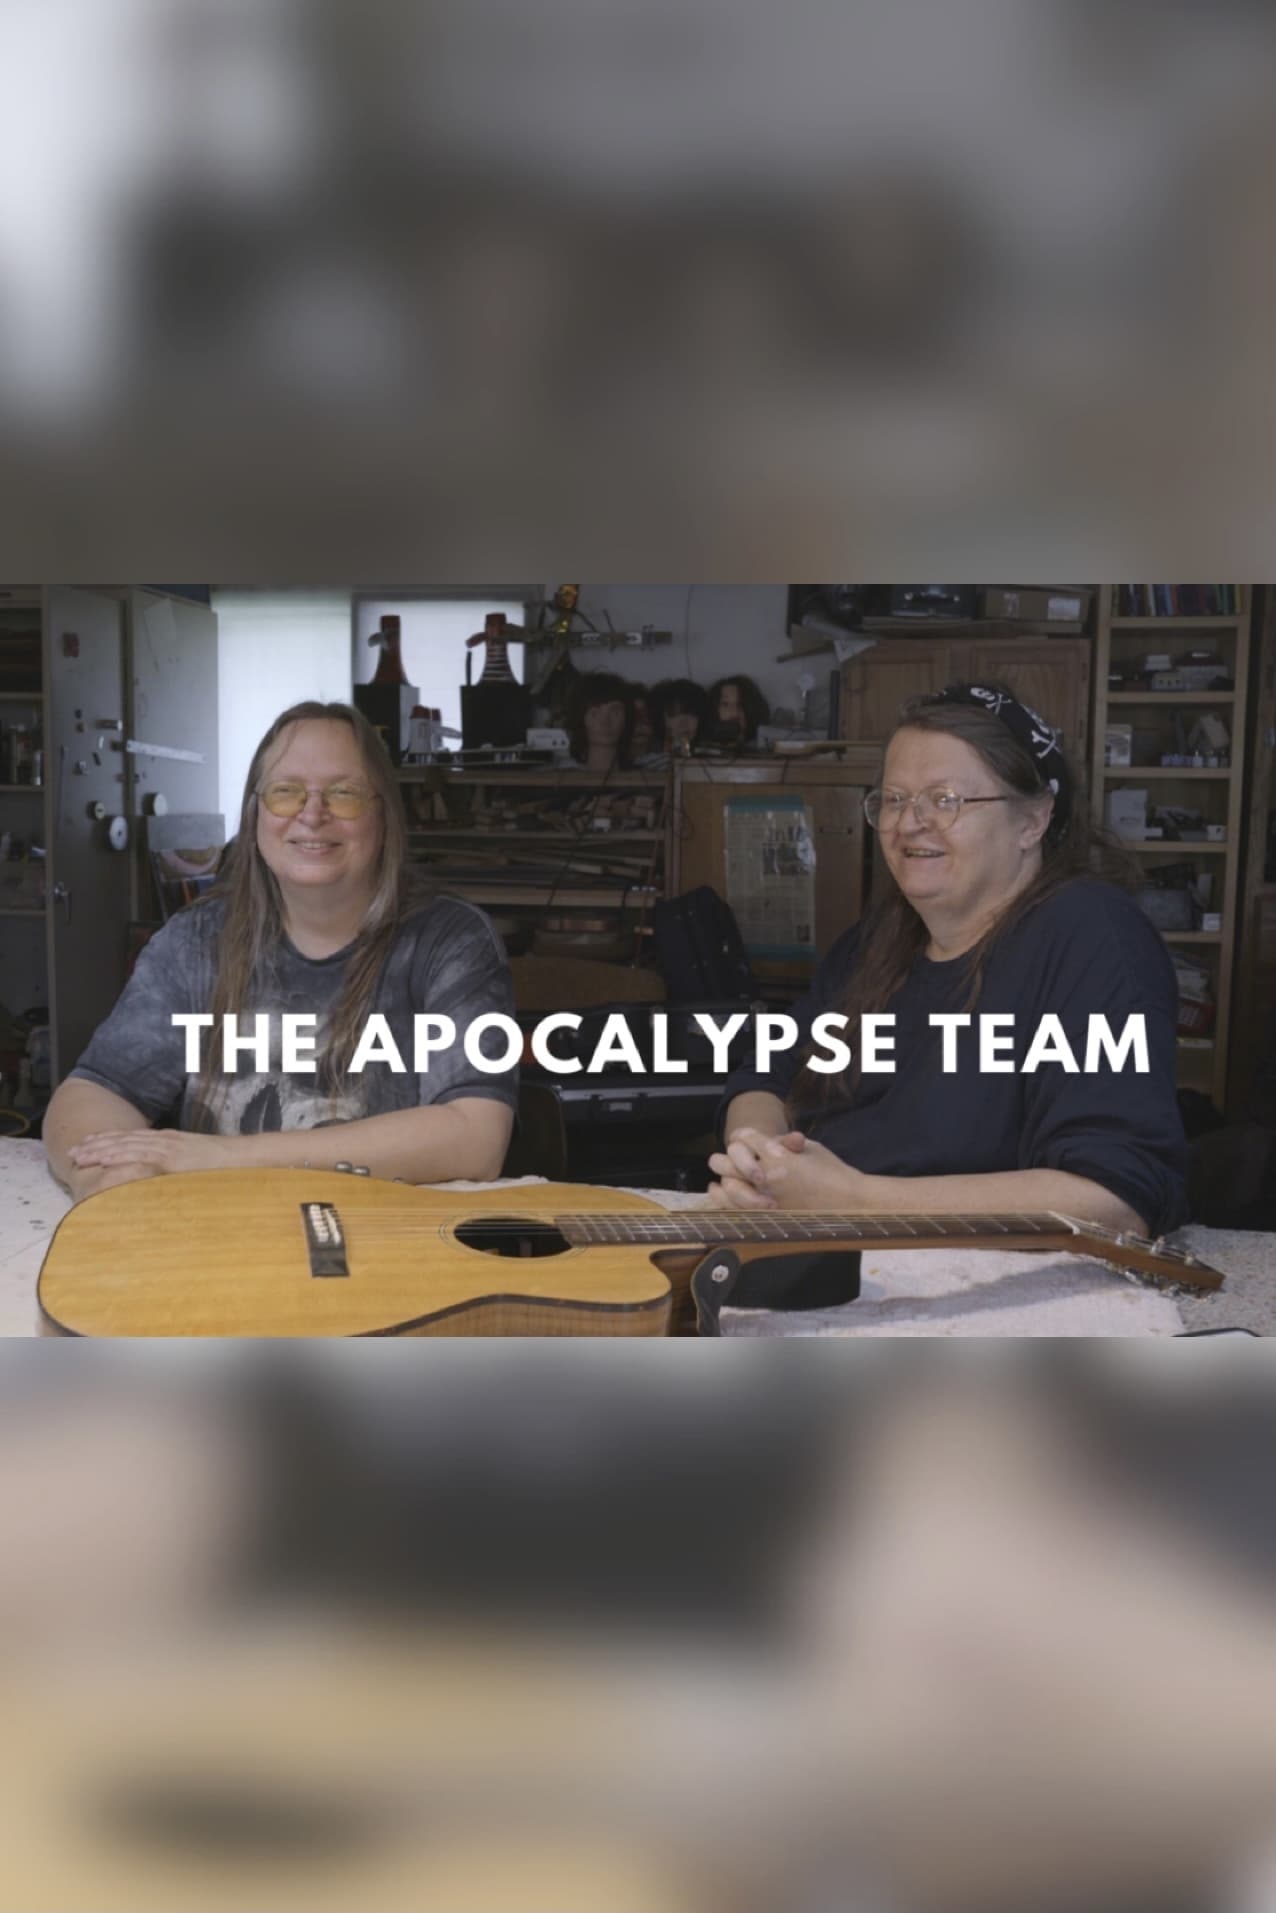 The Apocalypse Team